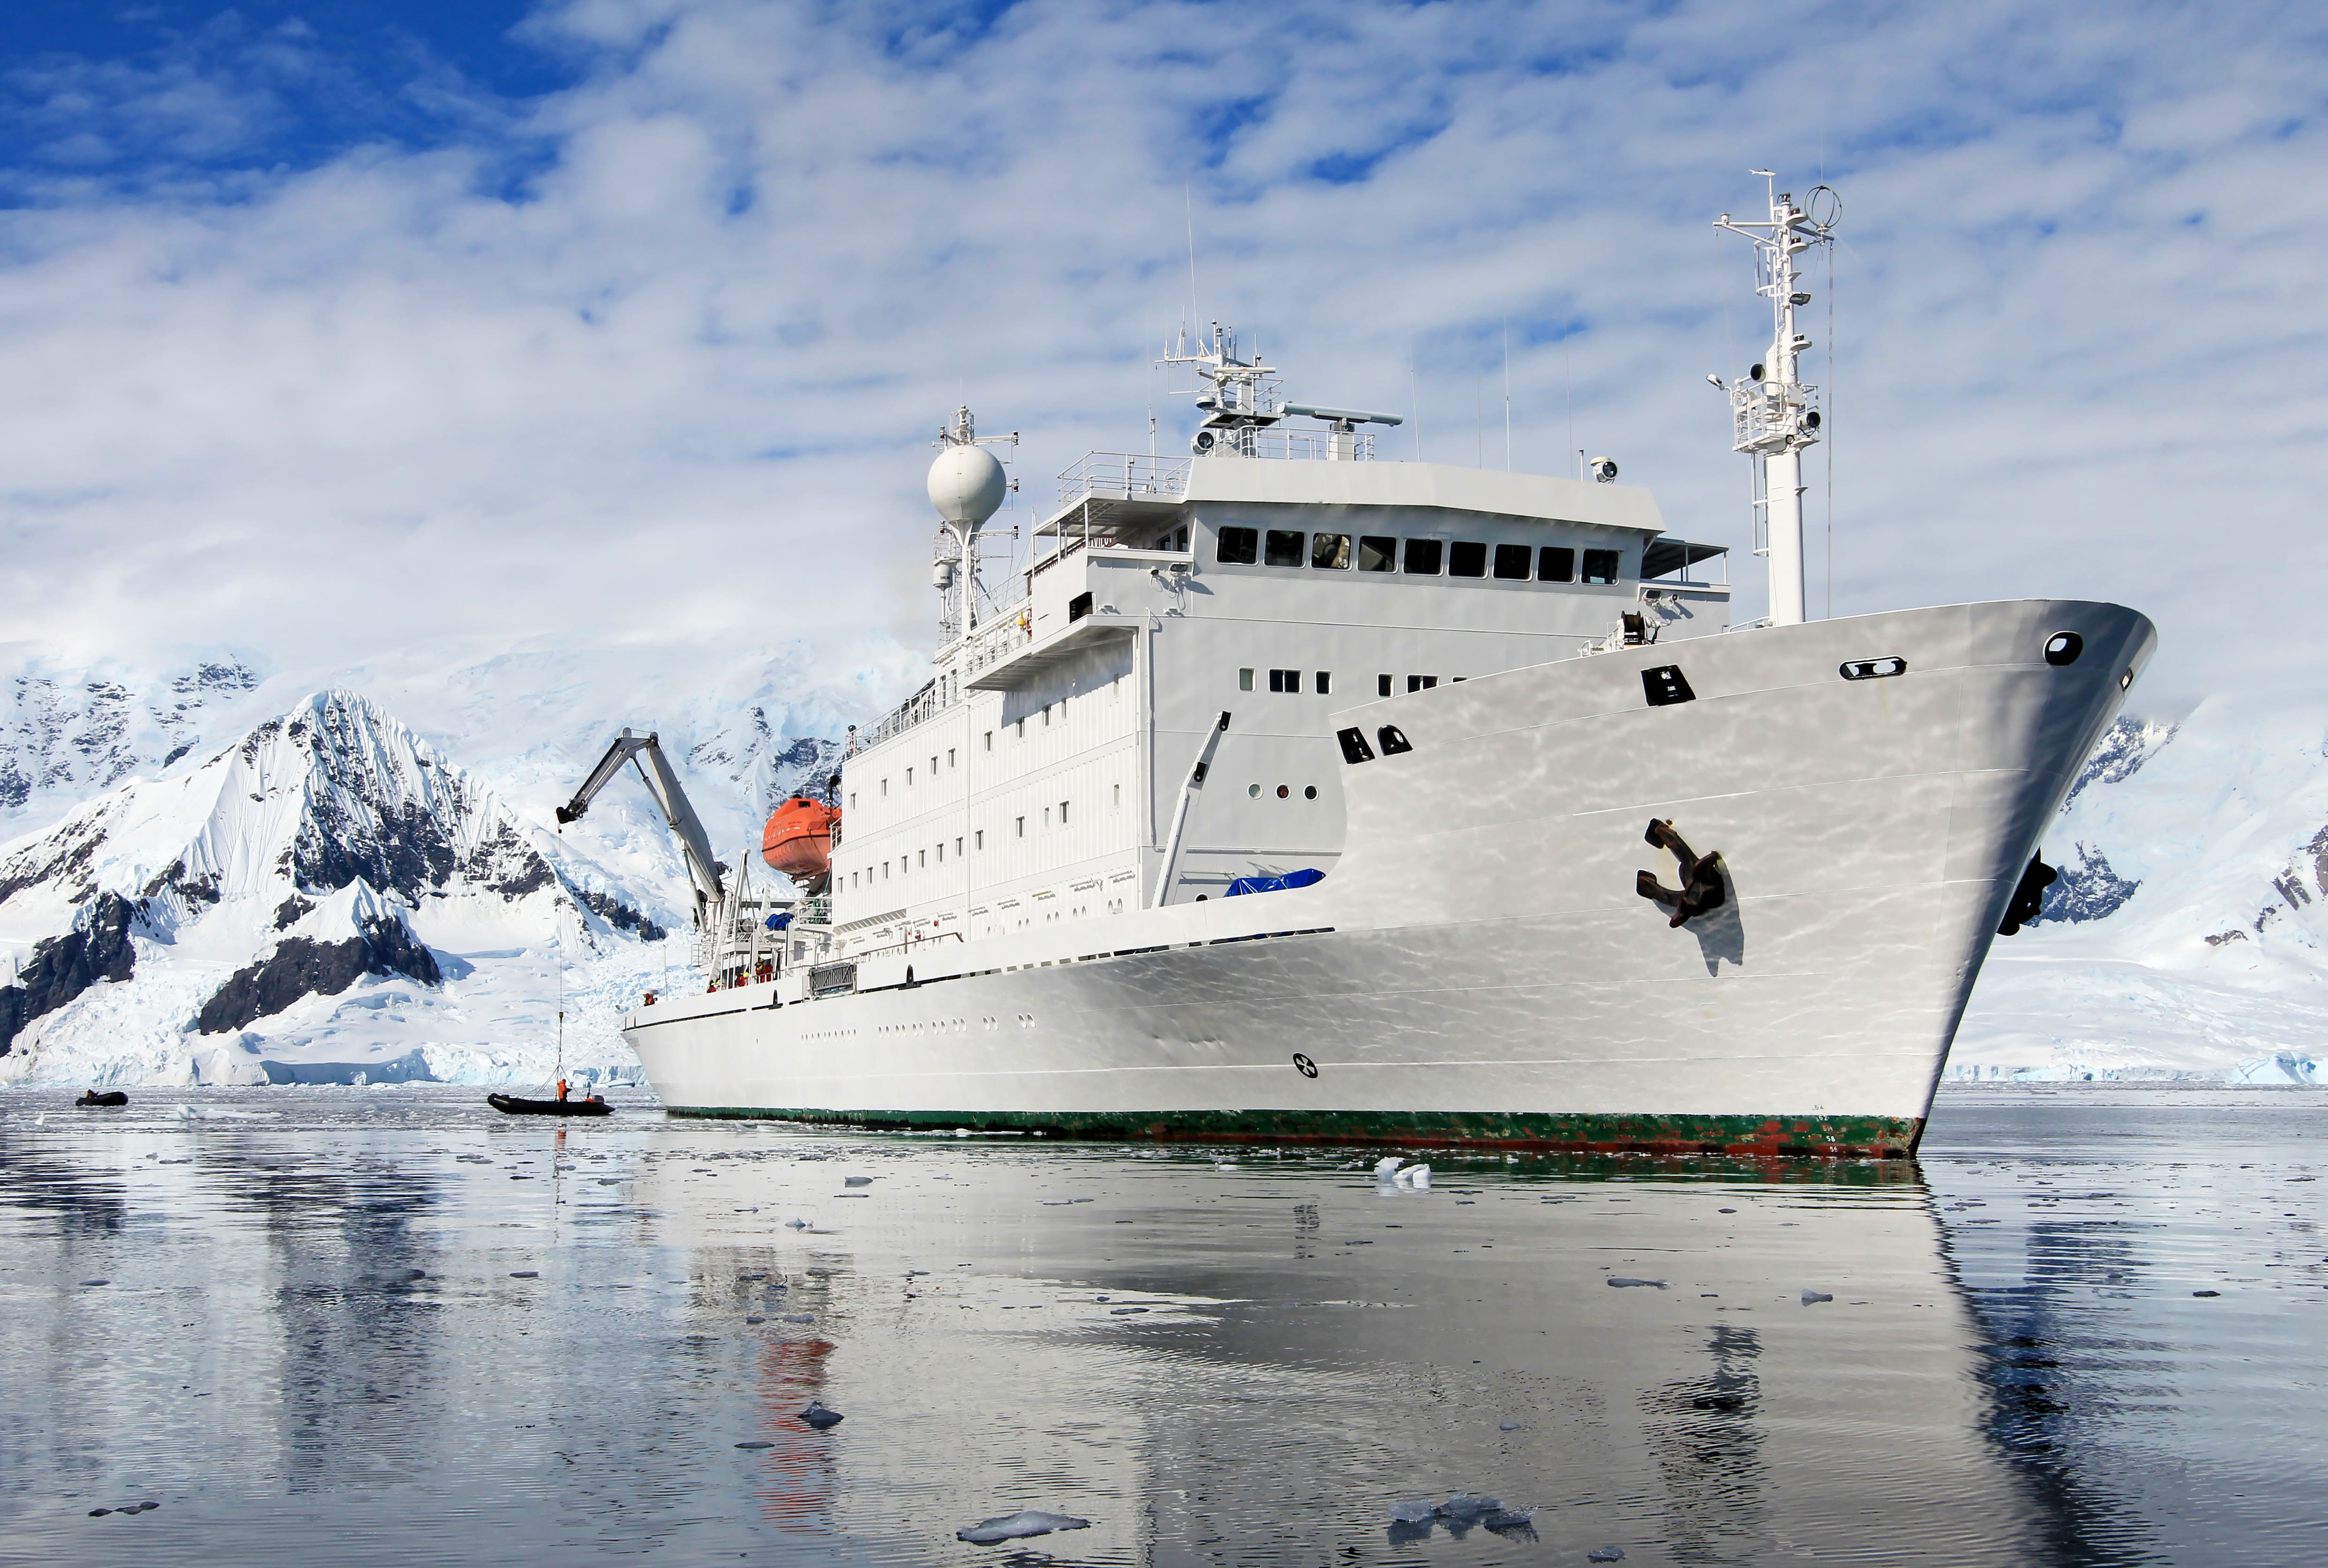 Grand navire de croisière dans les eaux de l'Antarctique, Antarctique © reisegraf - stock.adobe.com